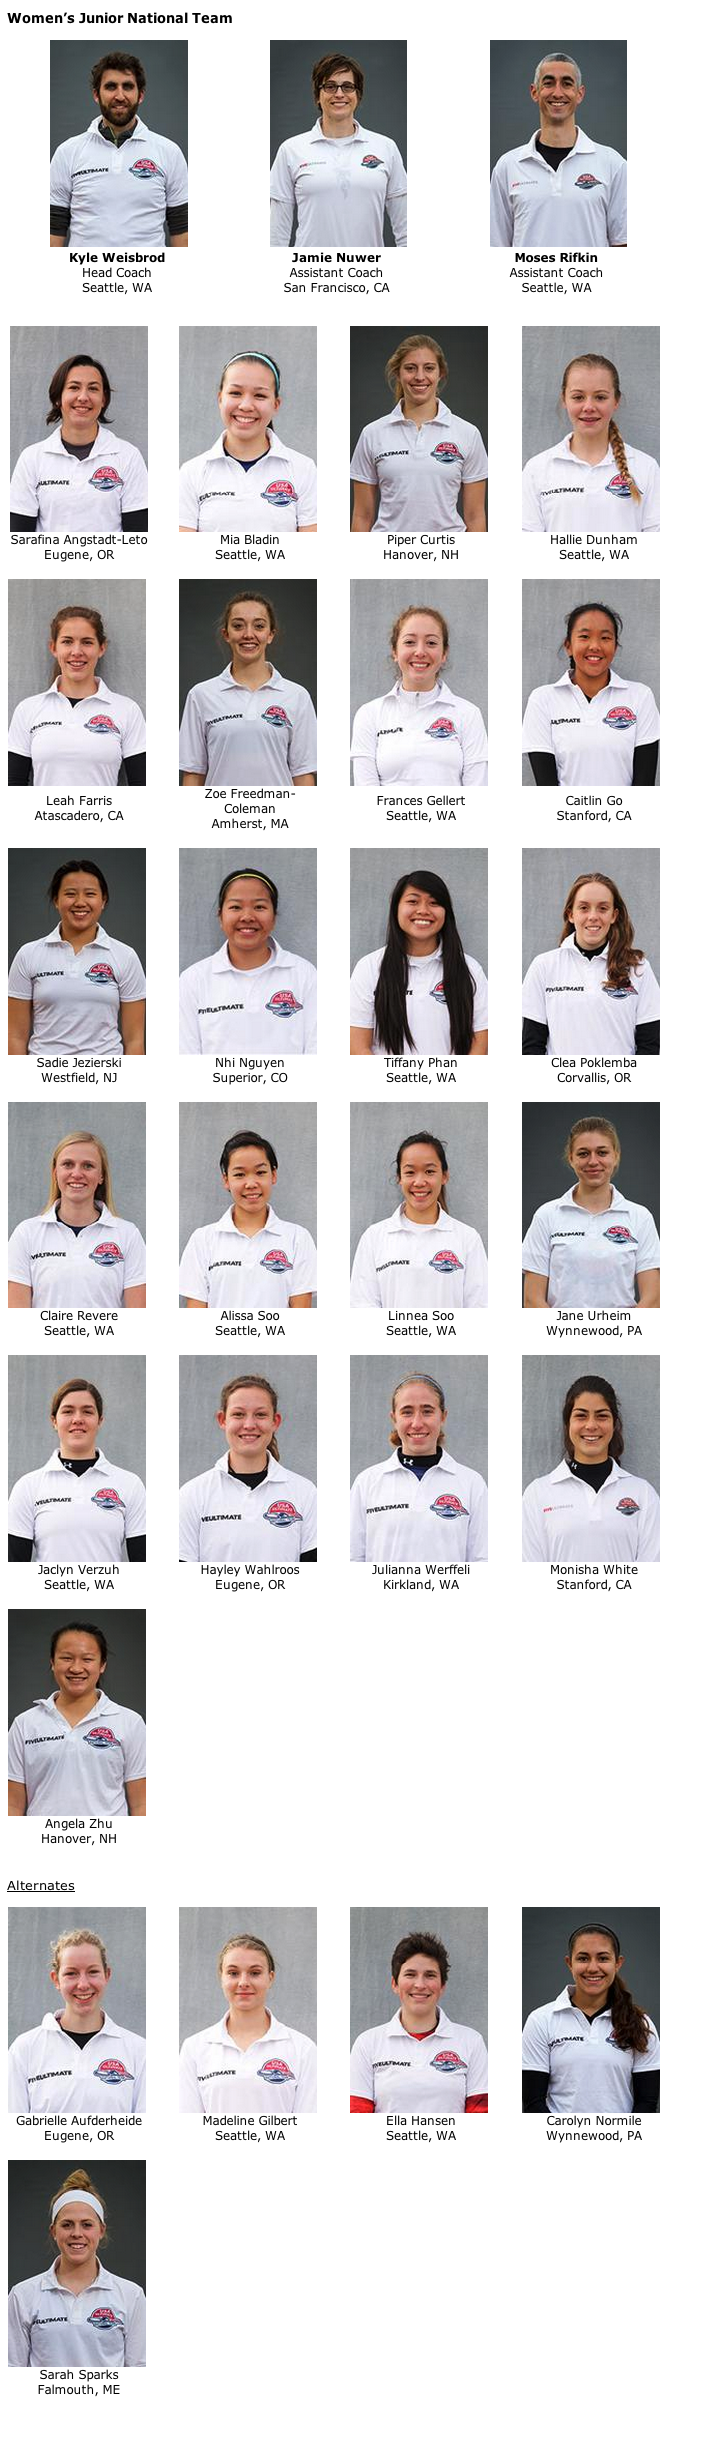 2014 USA Ultimate Girls U19 Team.